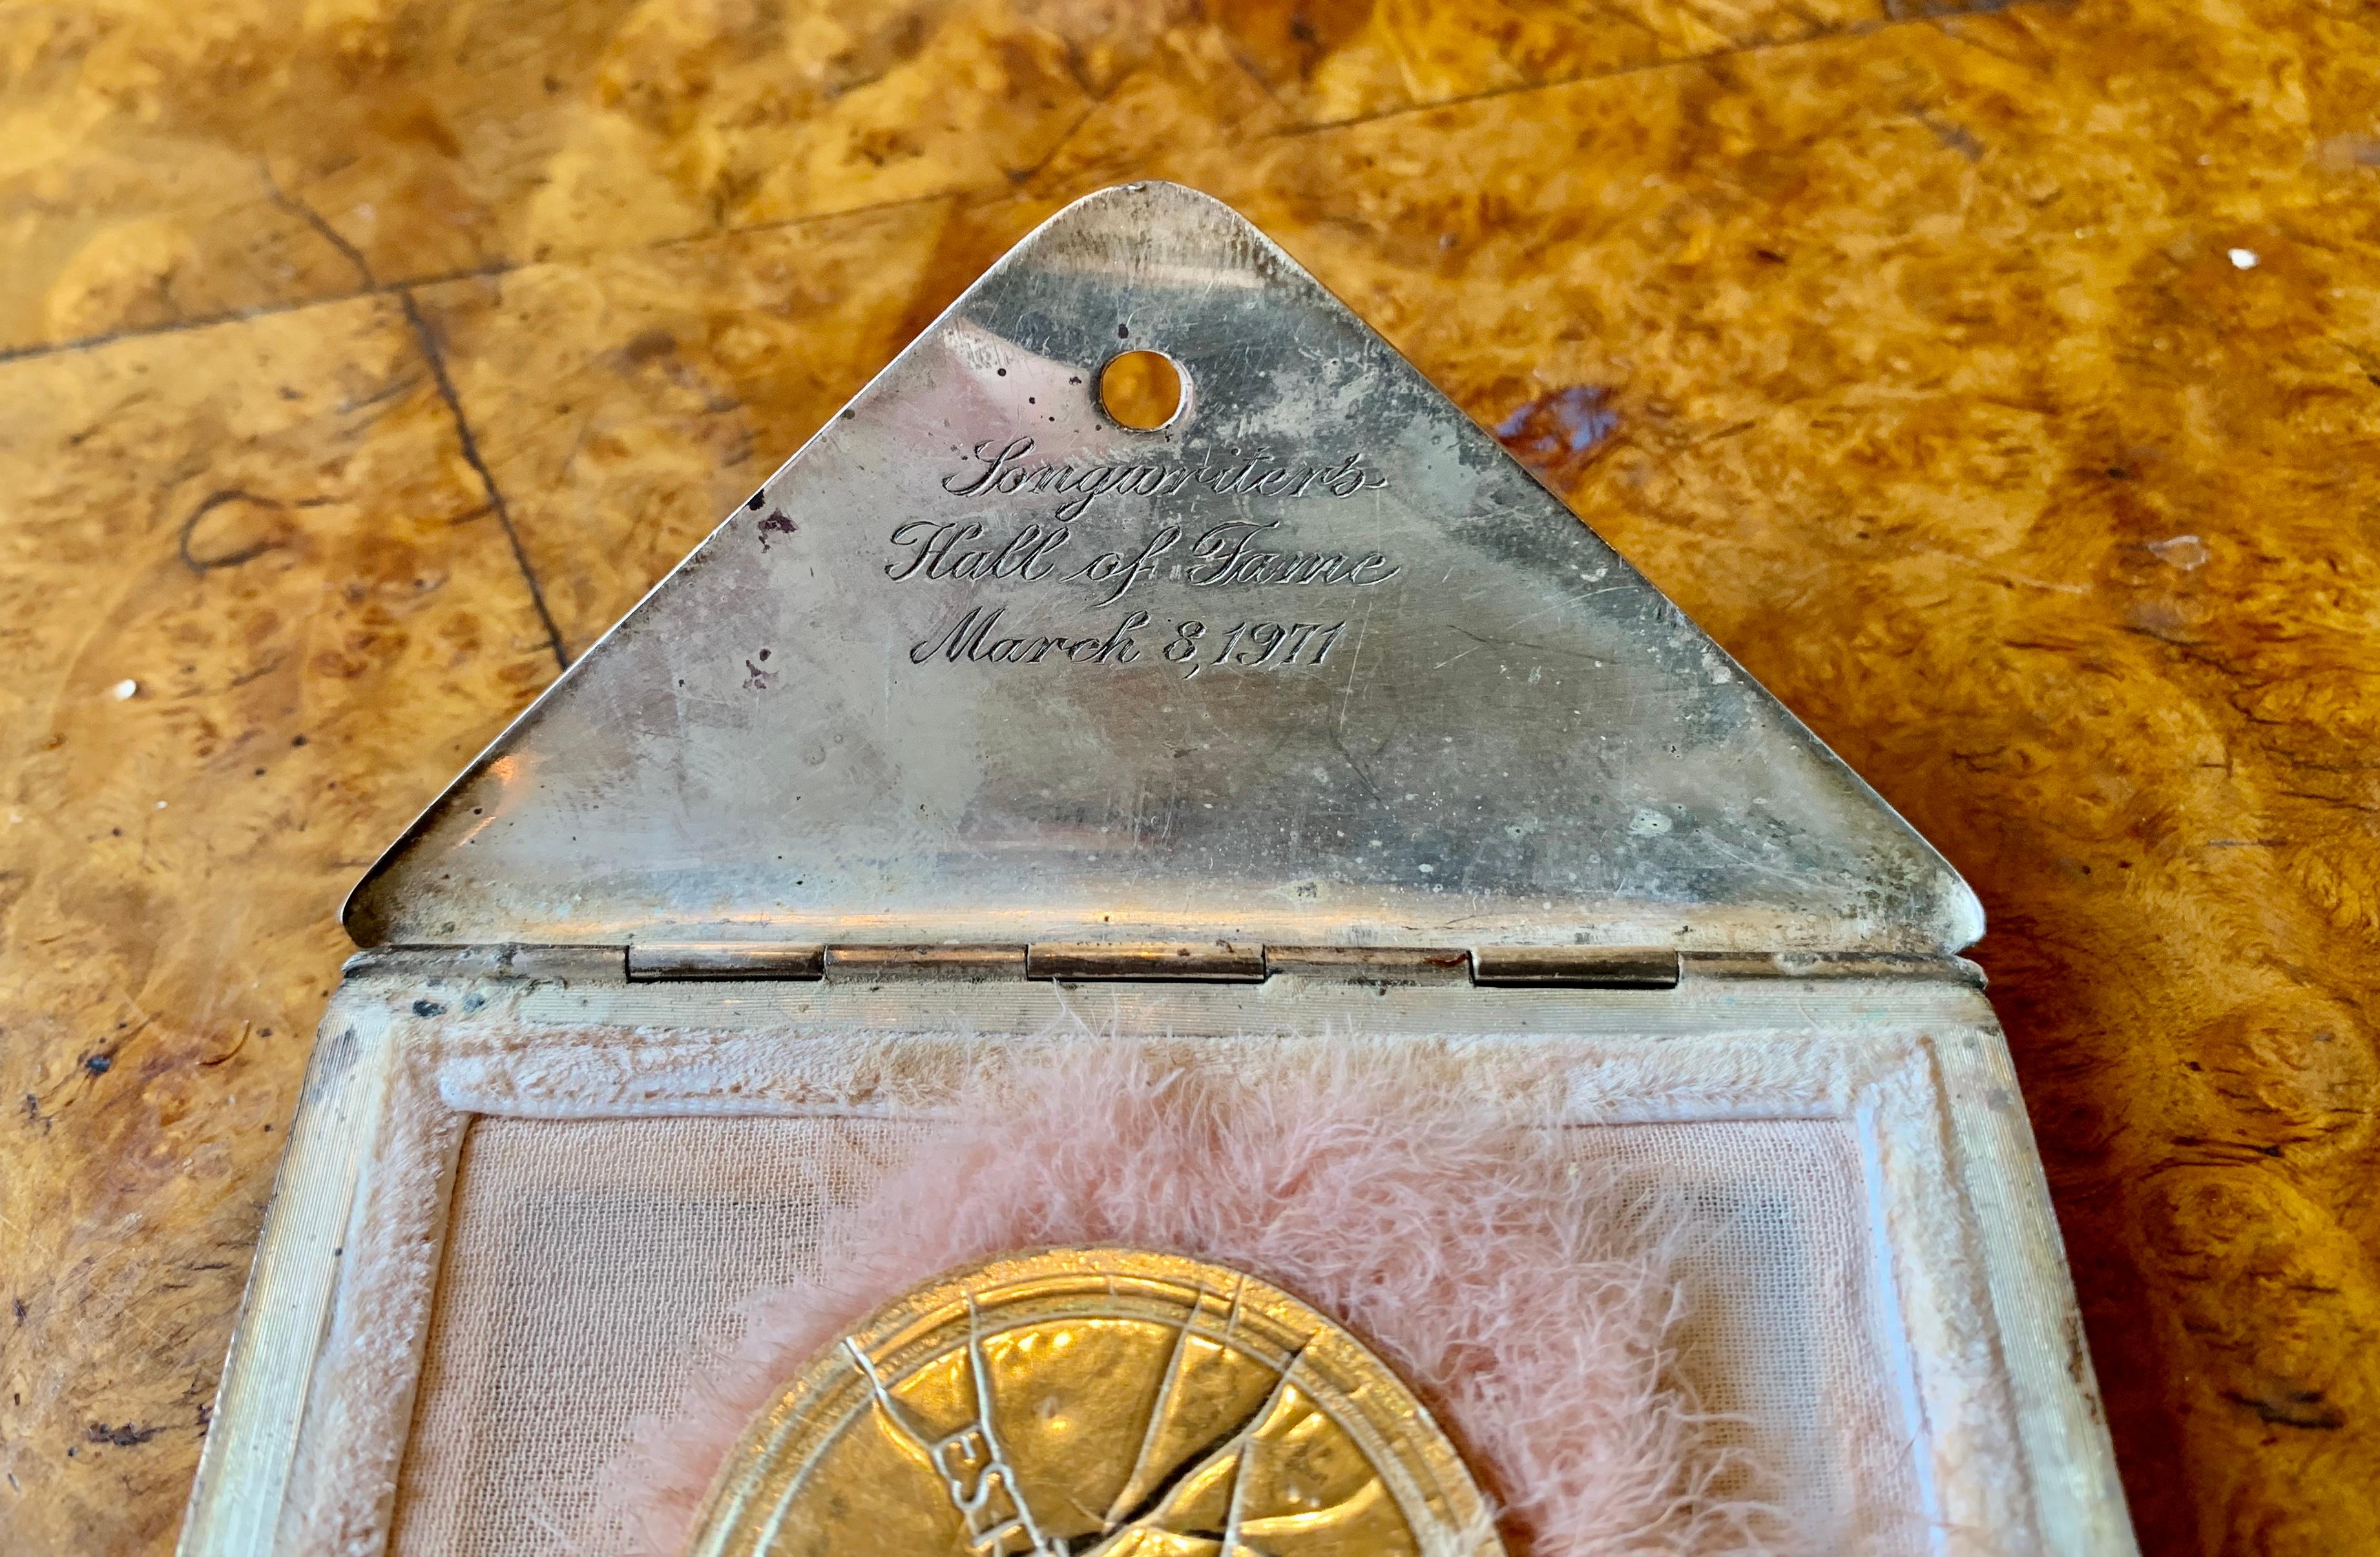 Wir freuen uns, Ihnen die Tiffany & Co. Silberner Briefumschlag, der der legendären Oscar-Preisträgerin CELESTE HOLM gehörte und ihr von der Songwriter's Hall of Fame geschenkt und beschriftet wurde.
Der stilisierte Umschlag ist aus gebürstetem